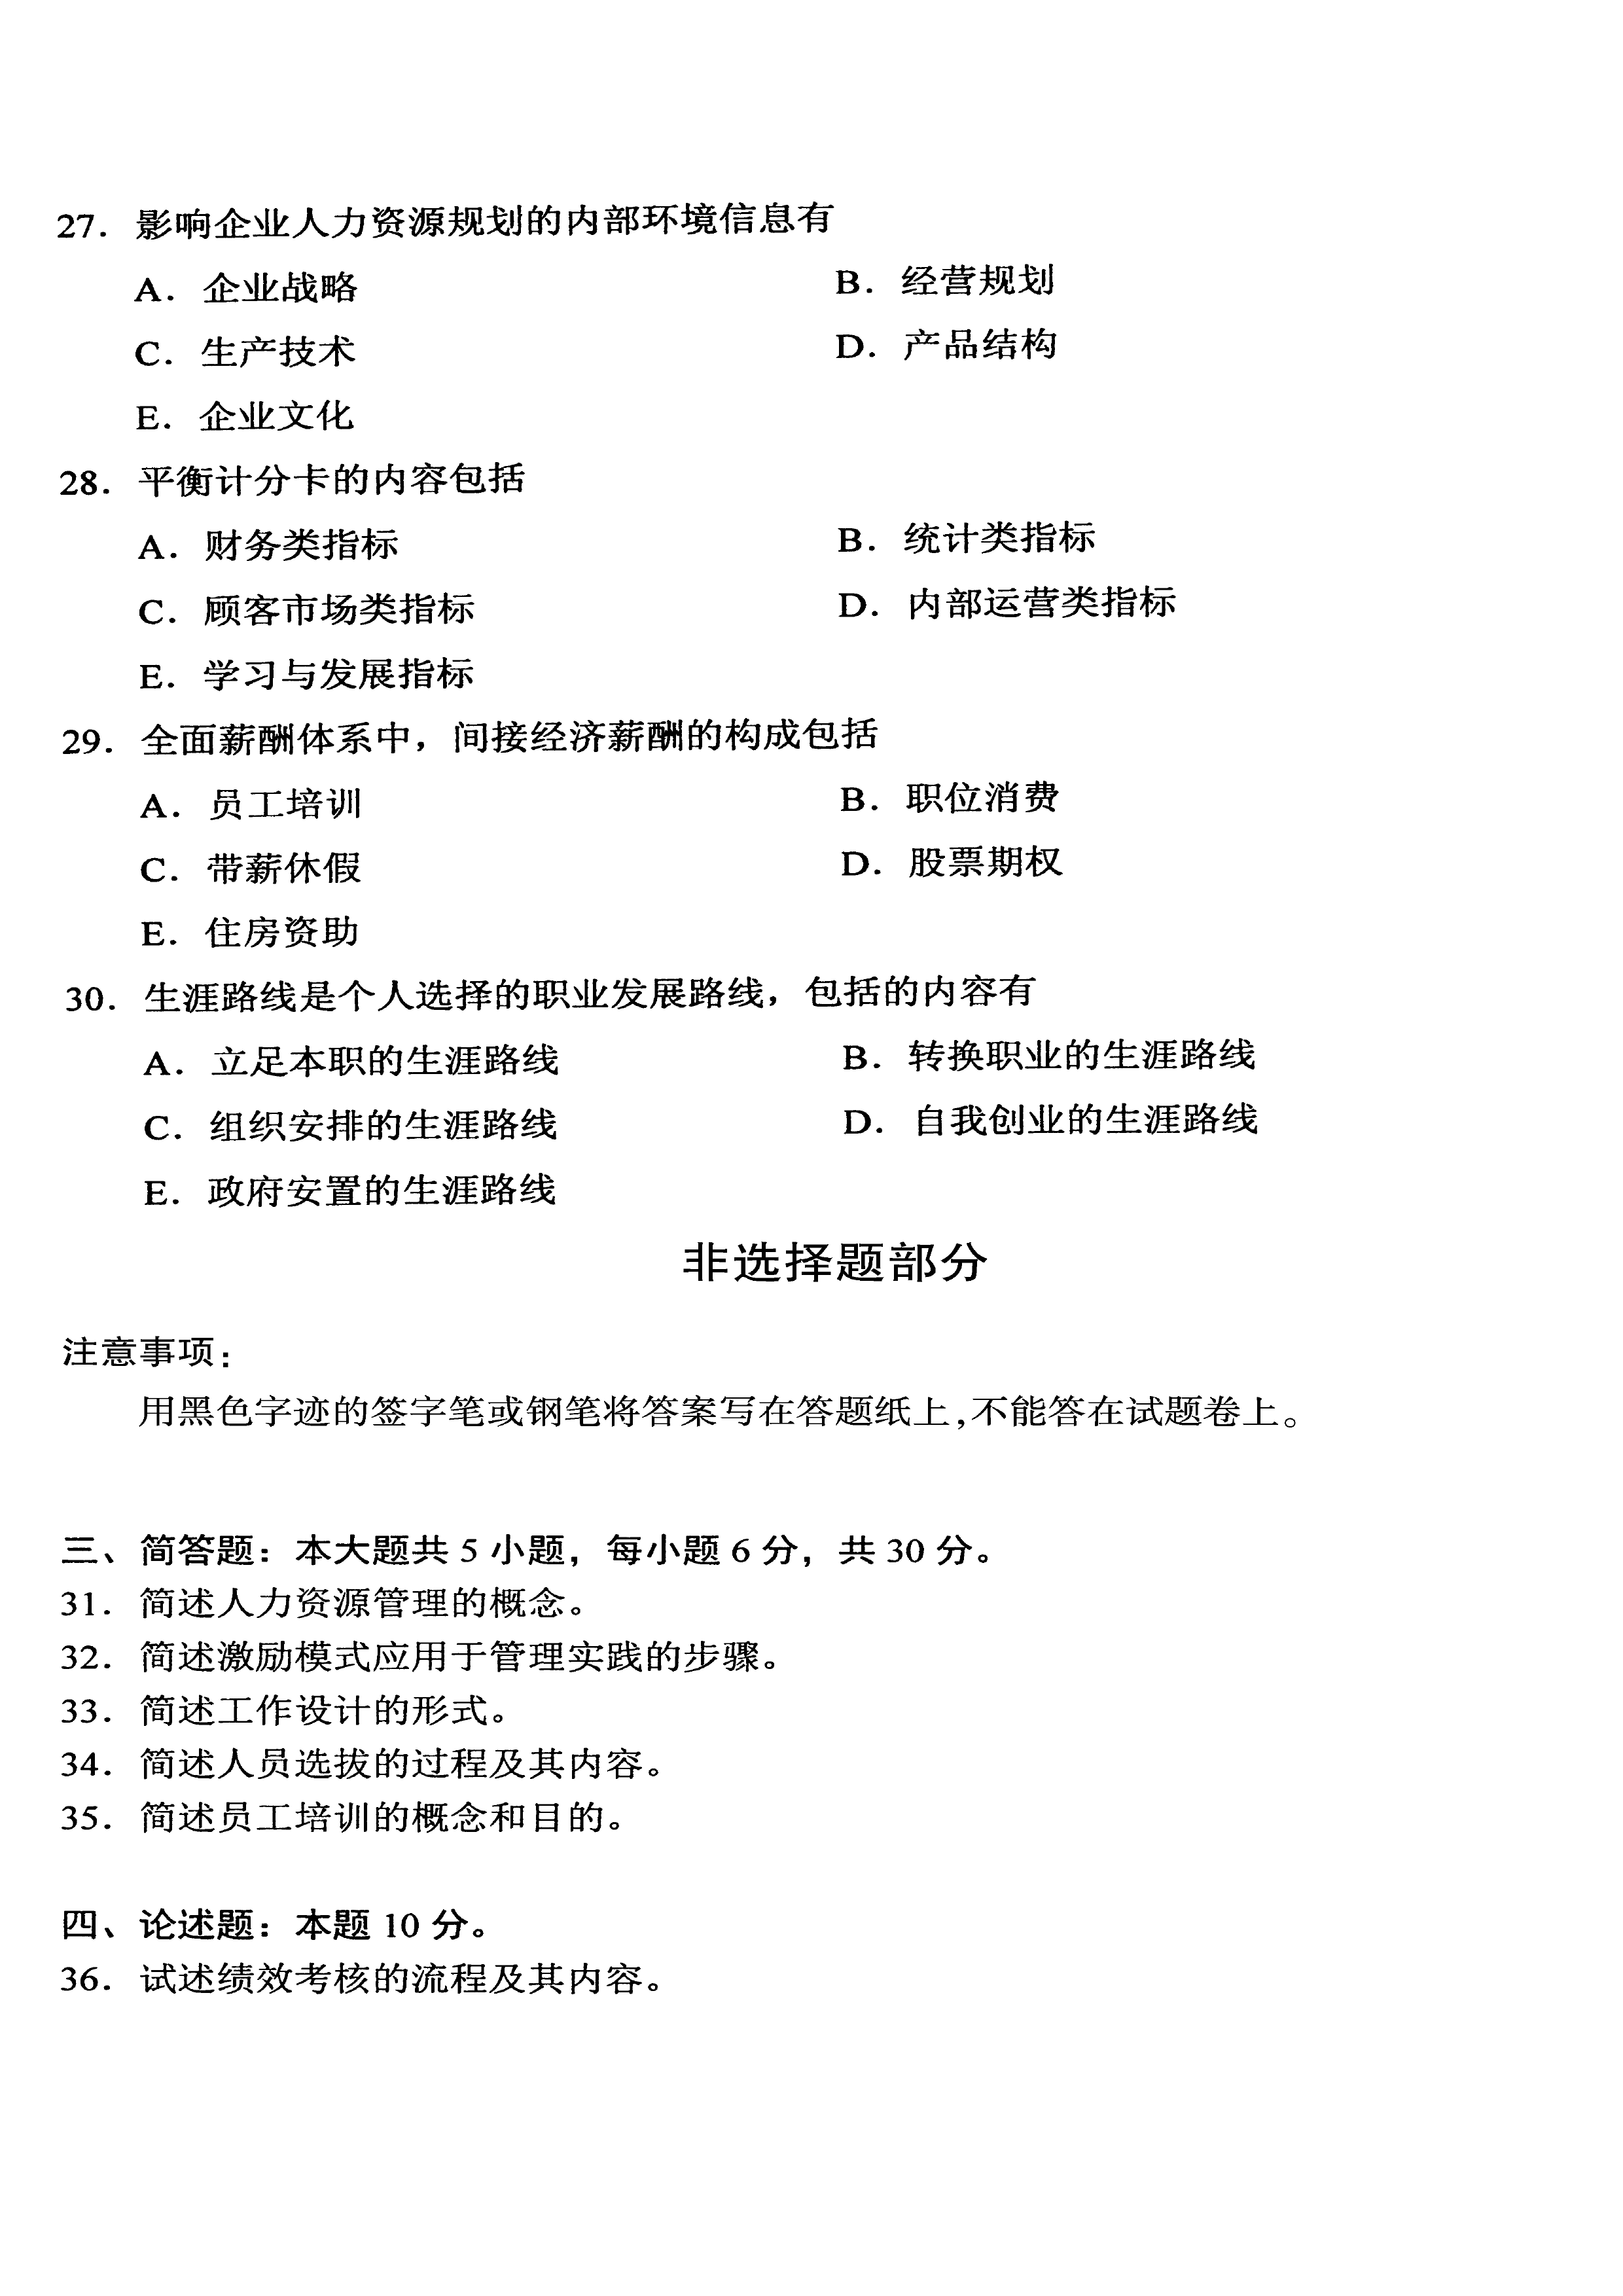 2020年10月贵州省自考00147人力资源管理真题及答案